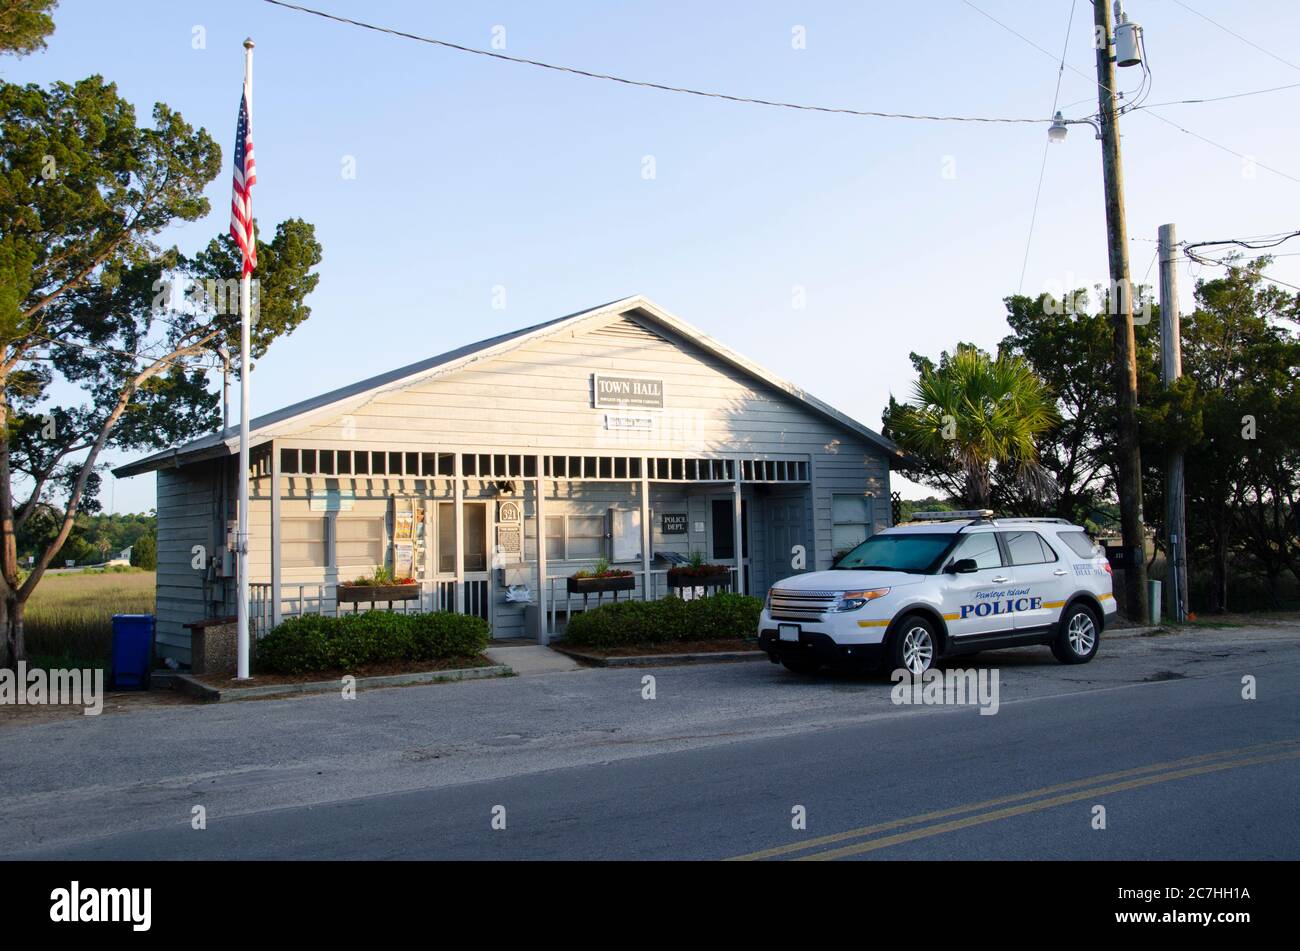 Ein kleines Holzgebäude in der frühen Morgensonne, das als Rathaus und Polizeibehörde fungiert, mit einem Polizeifahrzeug, das draußen geparkt ist. Eine Fahne hängt o Stockfoto